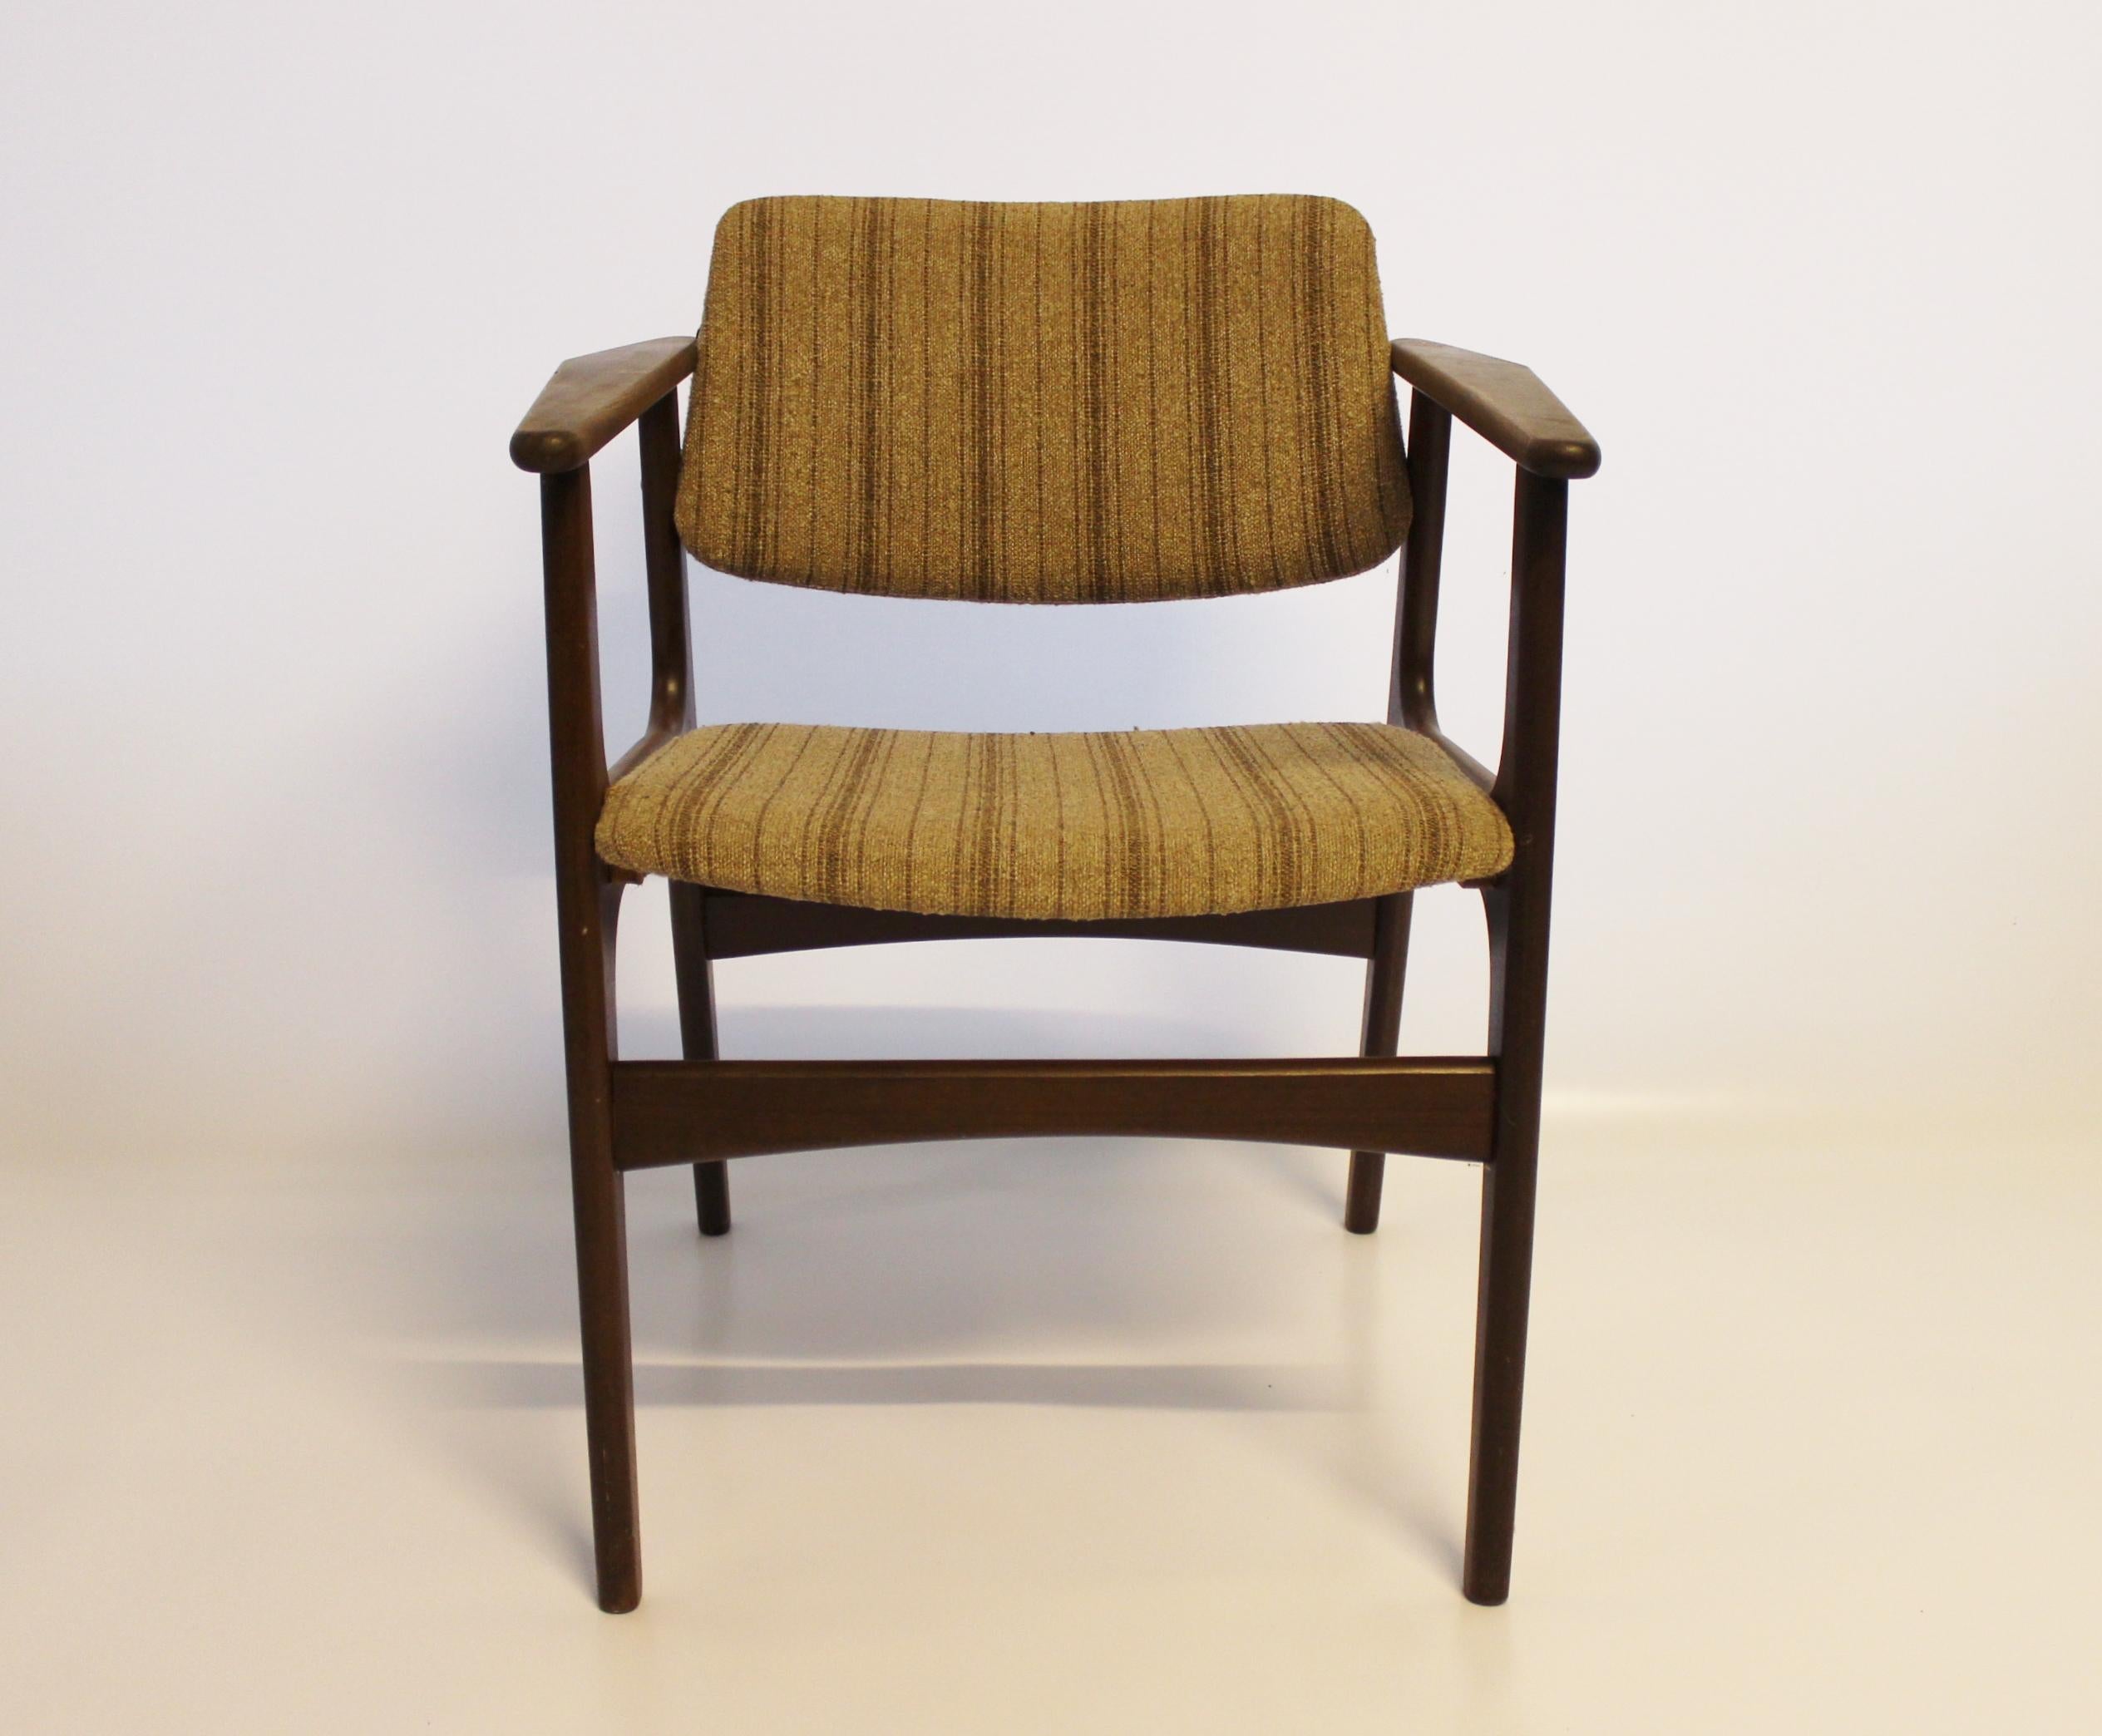 Cet ensemble de quatre fauteuils allie un design élégant à un savoir-faire exceptionnel, reflétant le travail renommé du designer danois Erik Buch. Fabriquées en bois de teck, ces chaises dégagent une chaleur et une sophistication caractéristiques